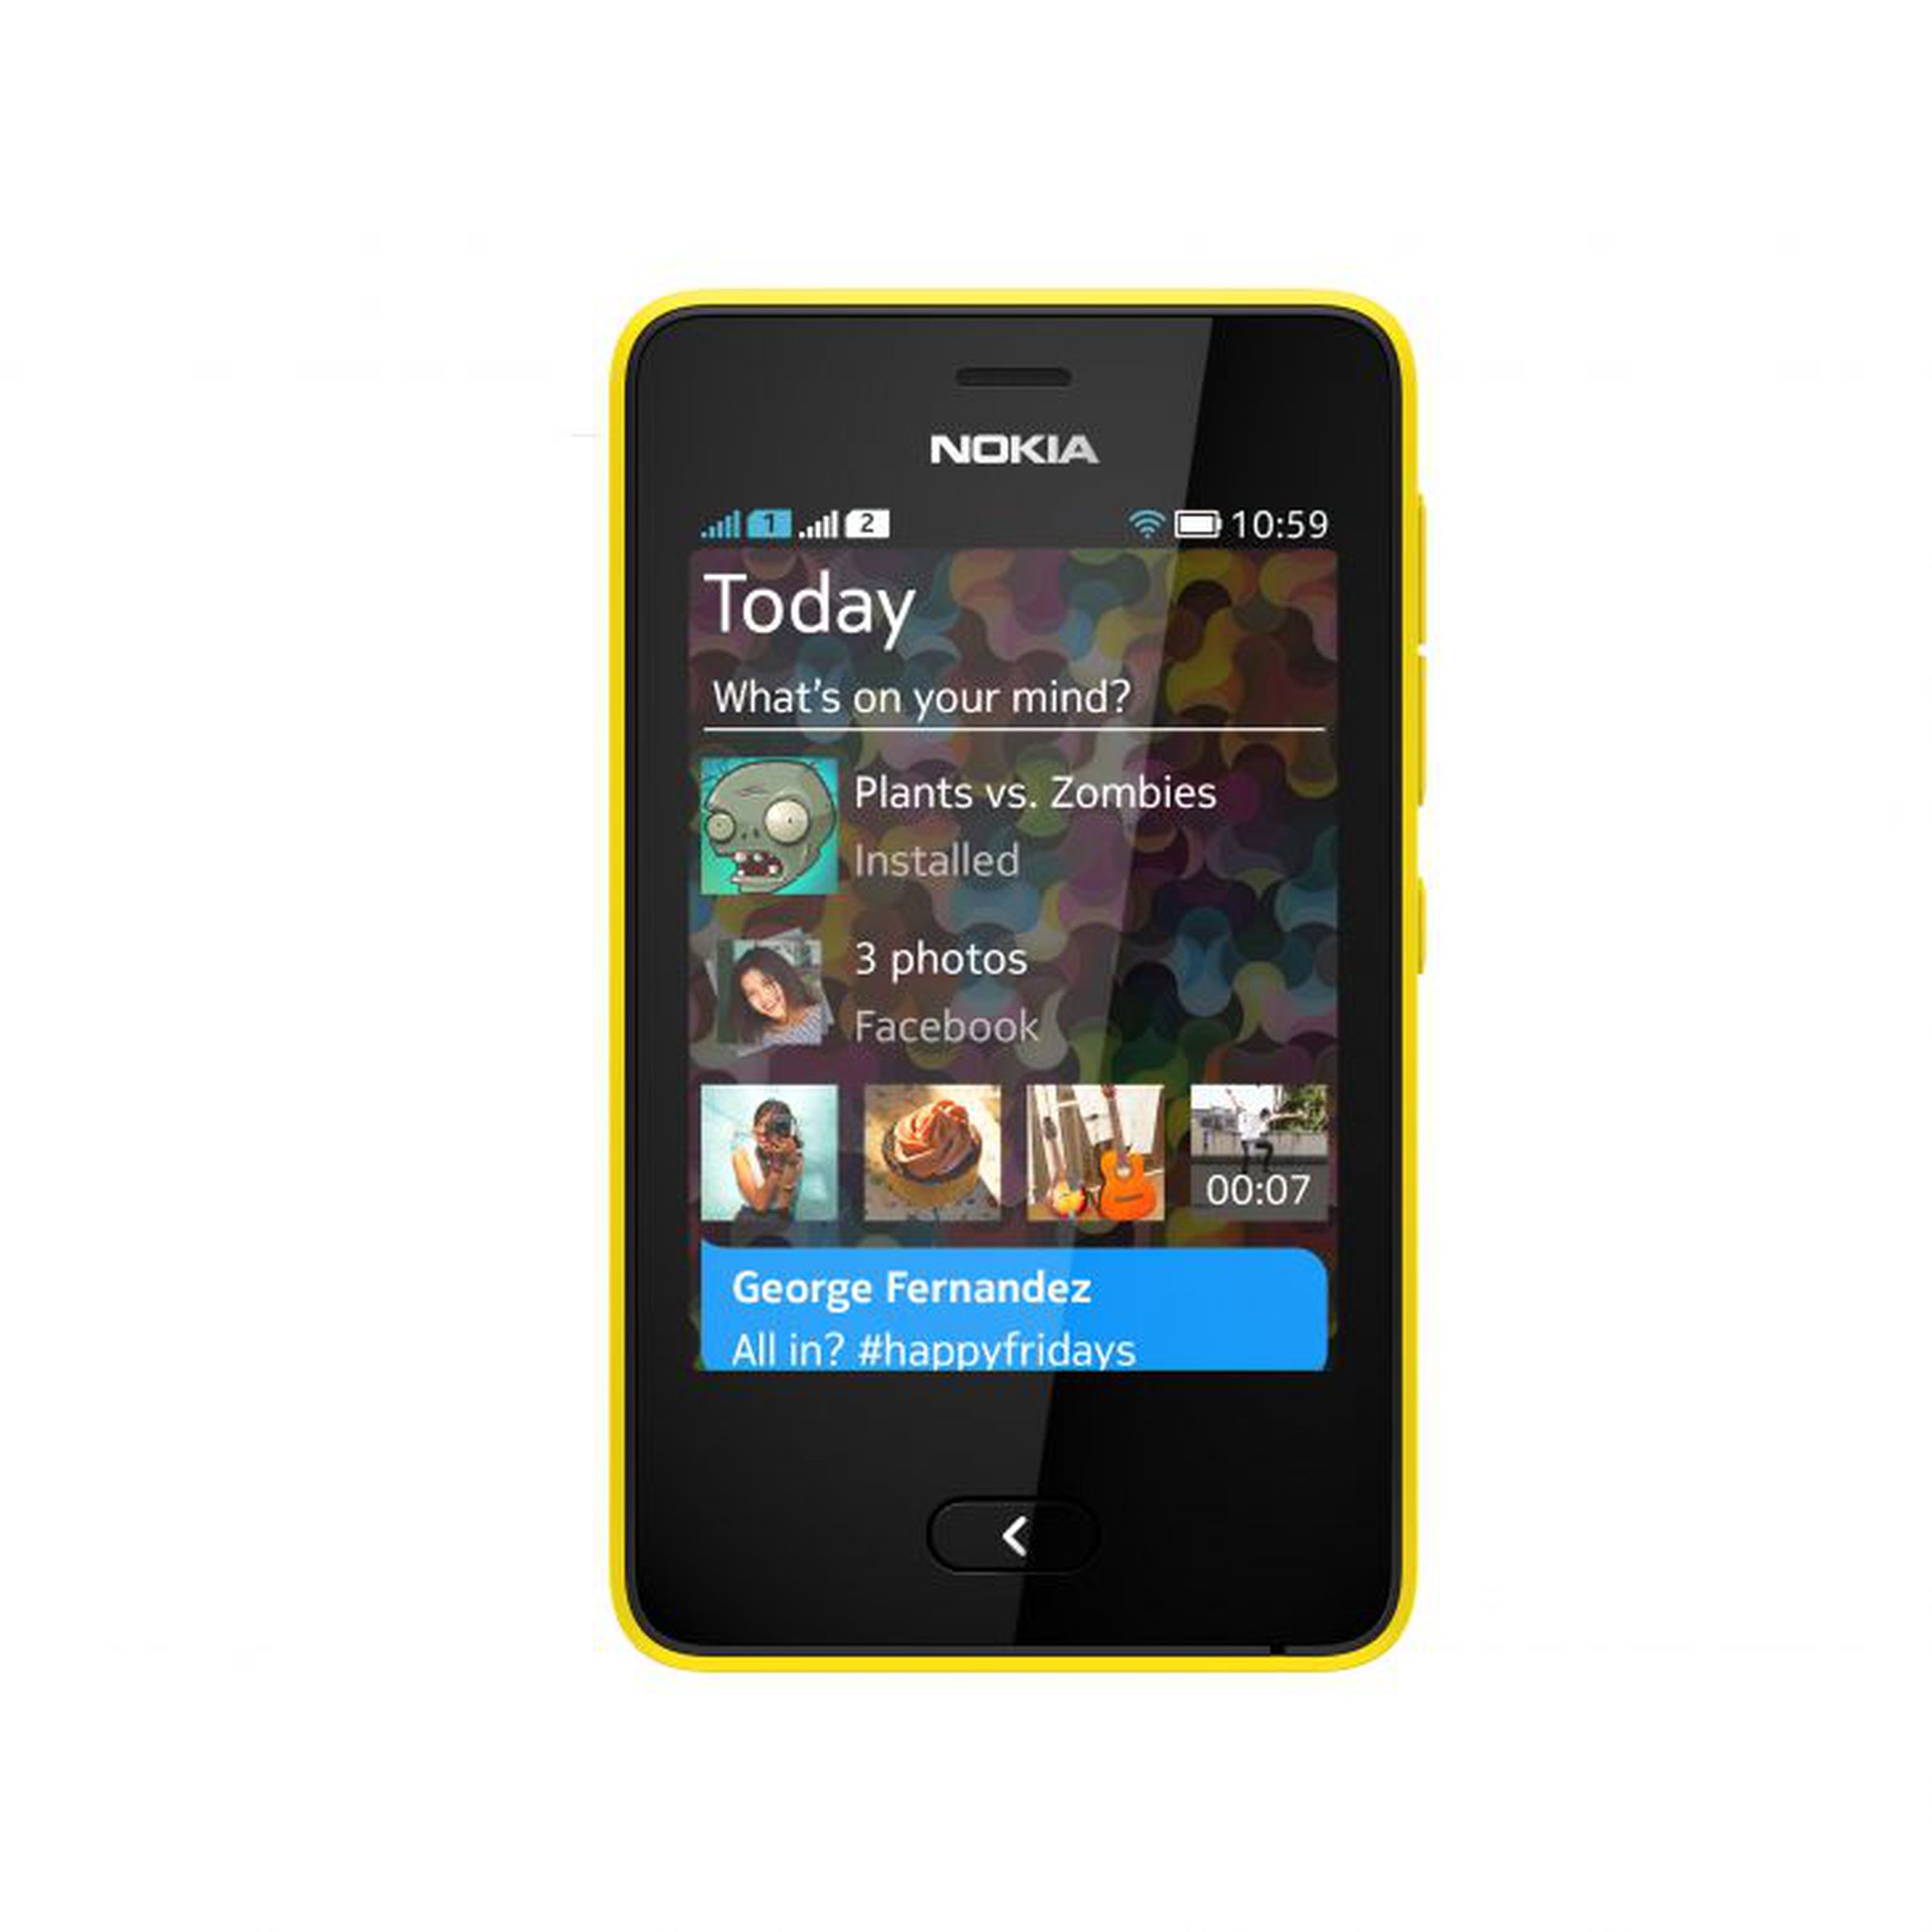 Nokia Asha 501 press pictures